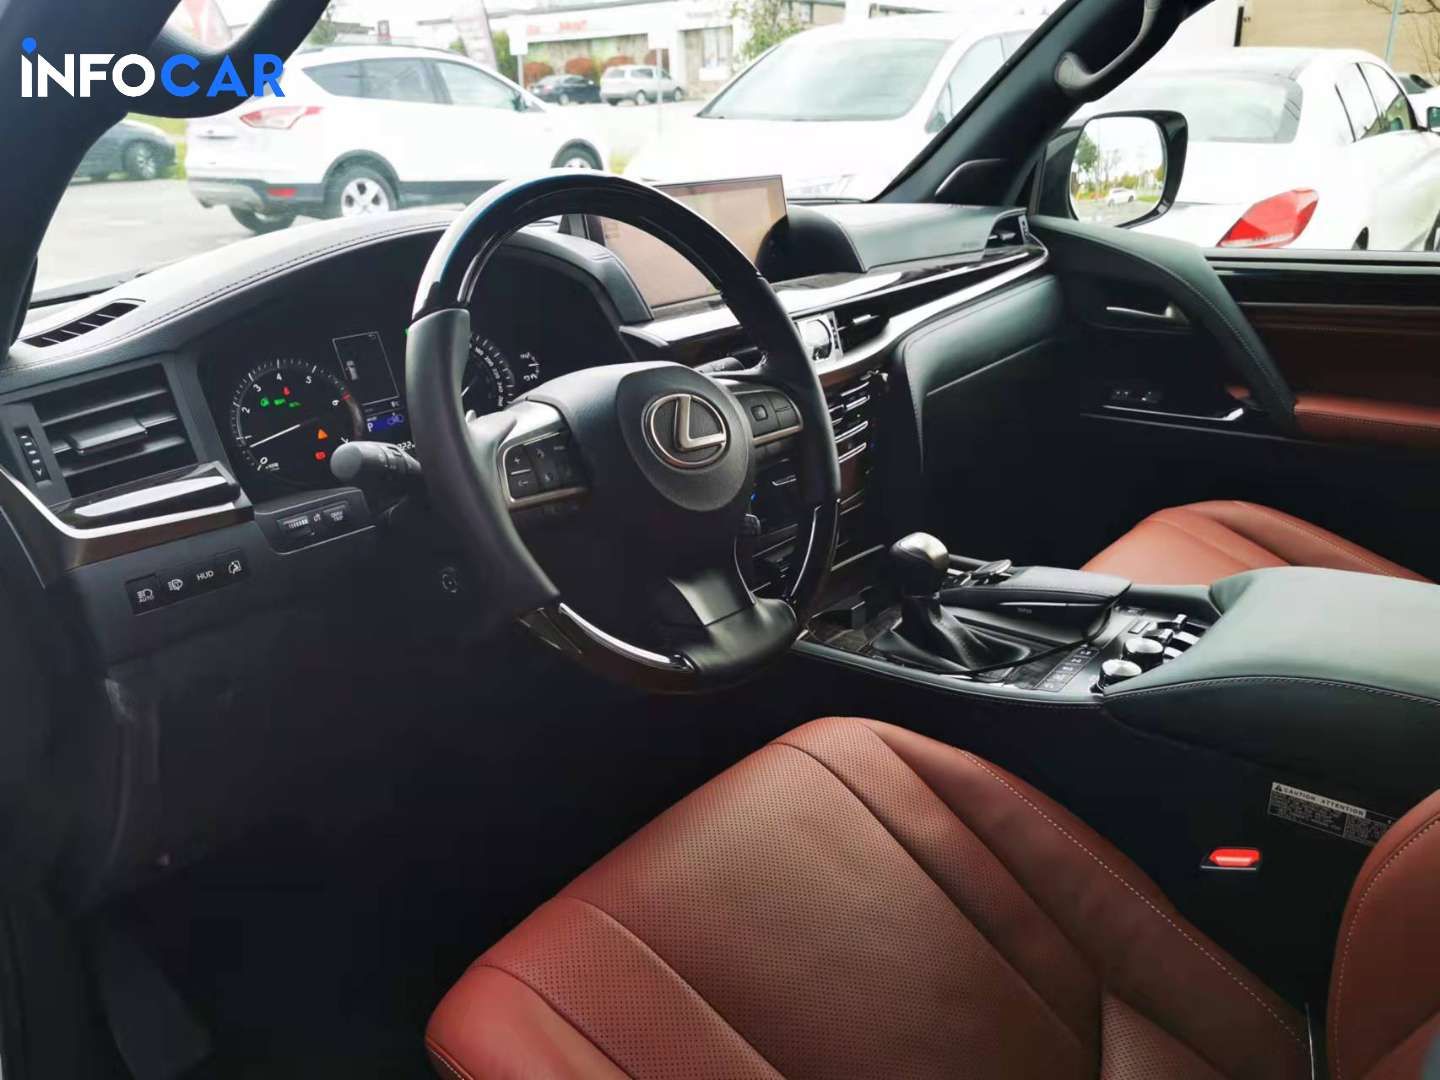 2020 Lexus LX 570 Black edition - INFOCAR - Toronto Auto Trading Platform